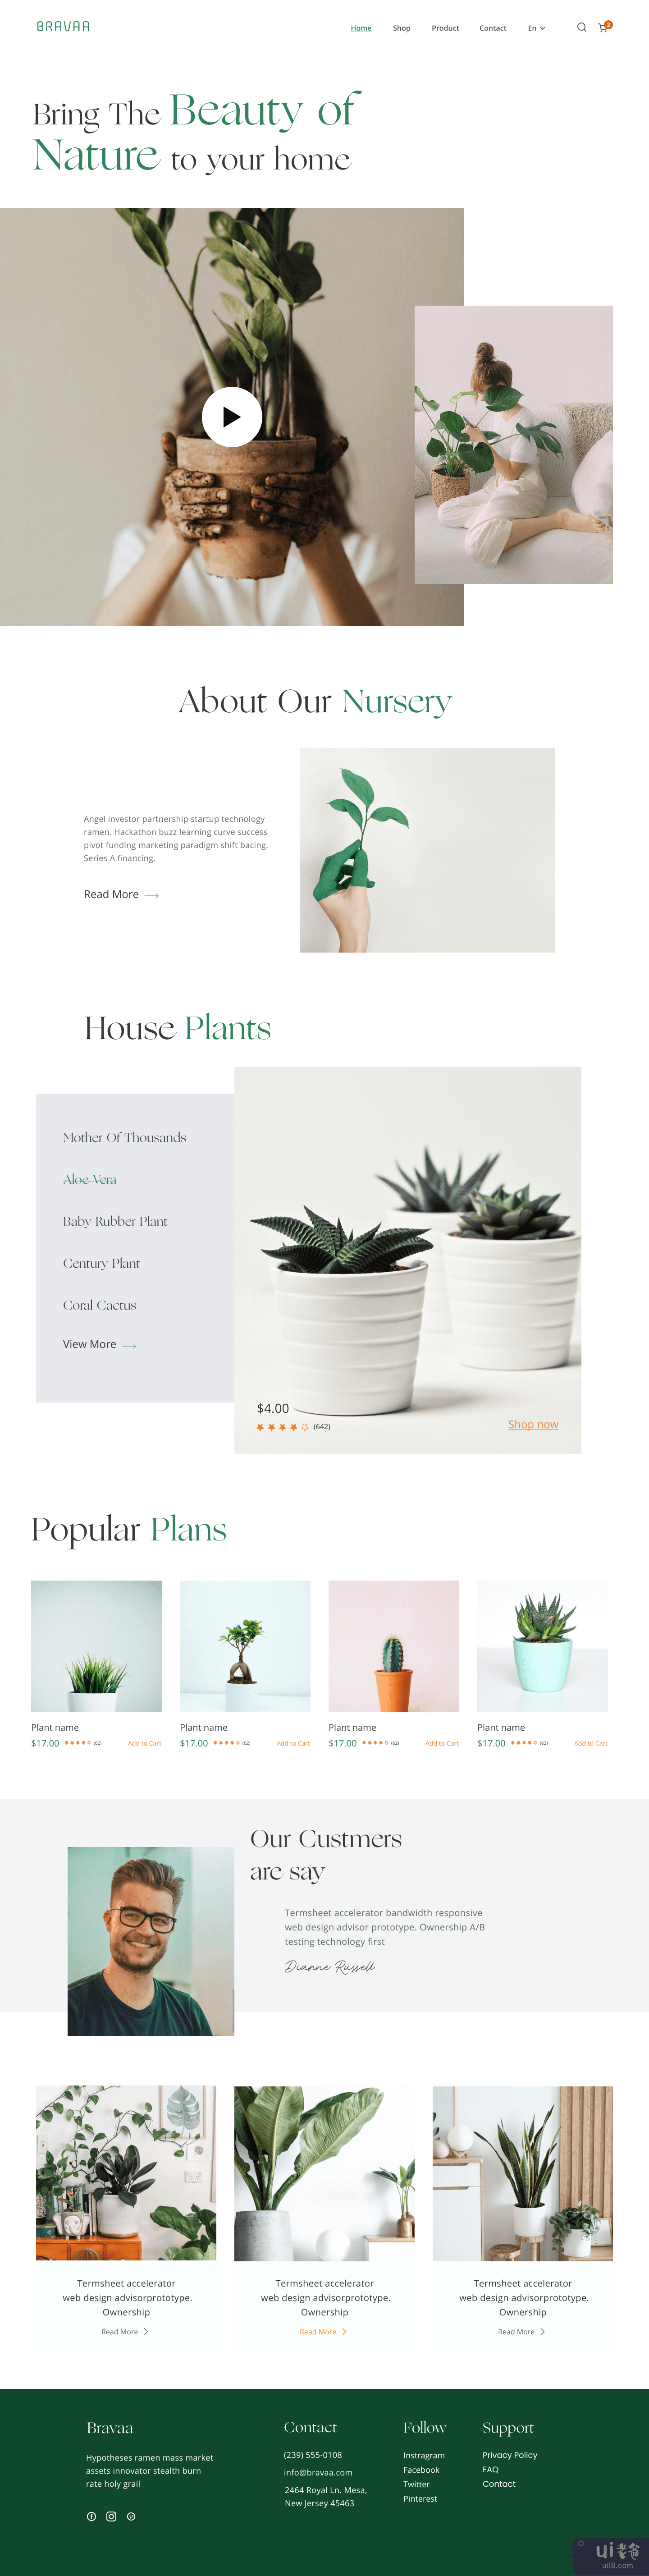 苗圃植物网站(Nursery plant website)插图